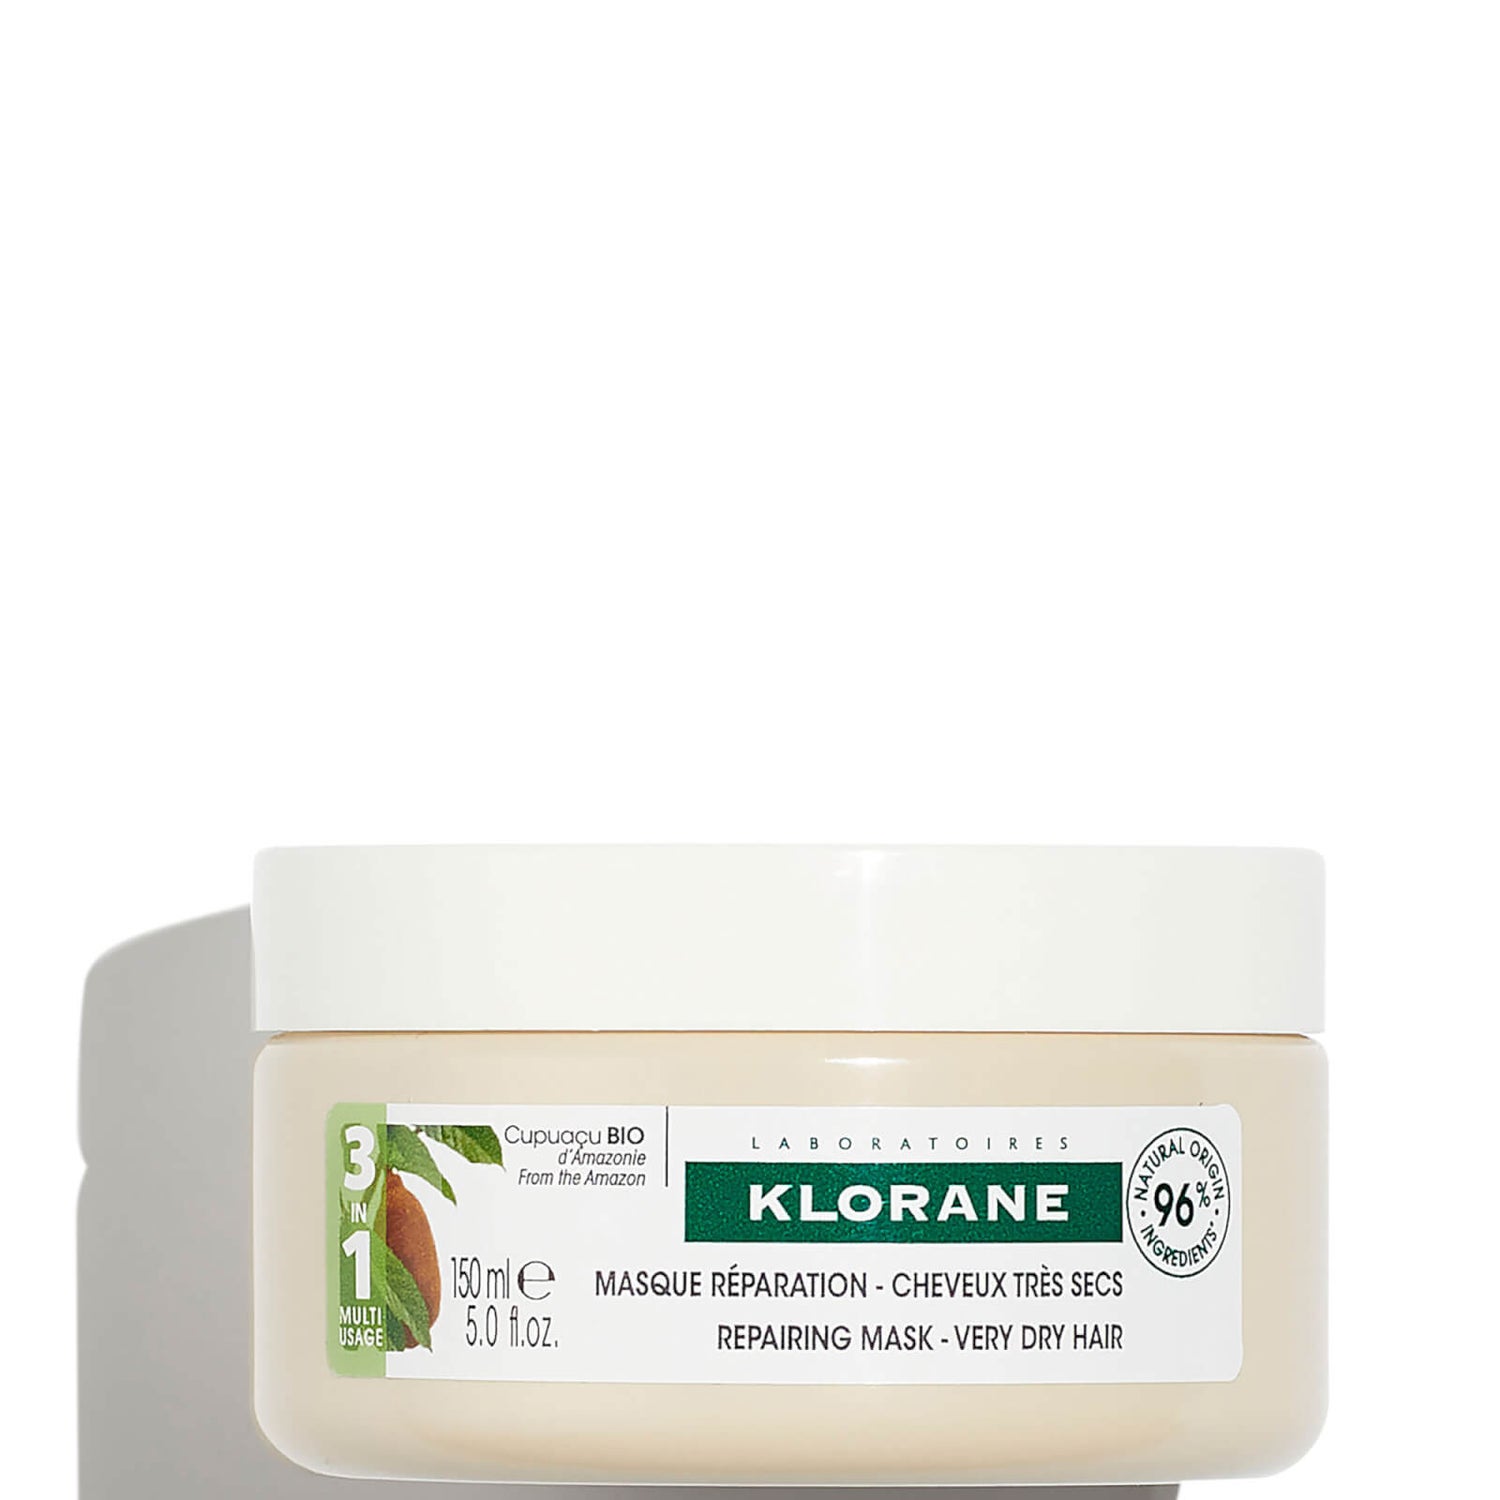 KLORANE Nourishing and Repairing Mask 150ml